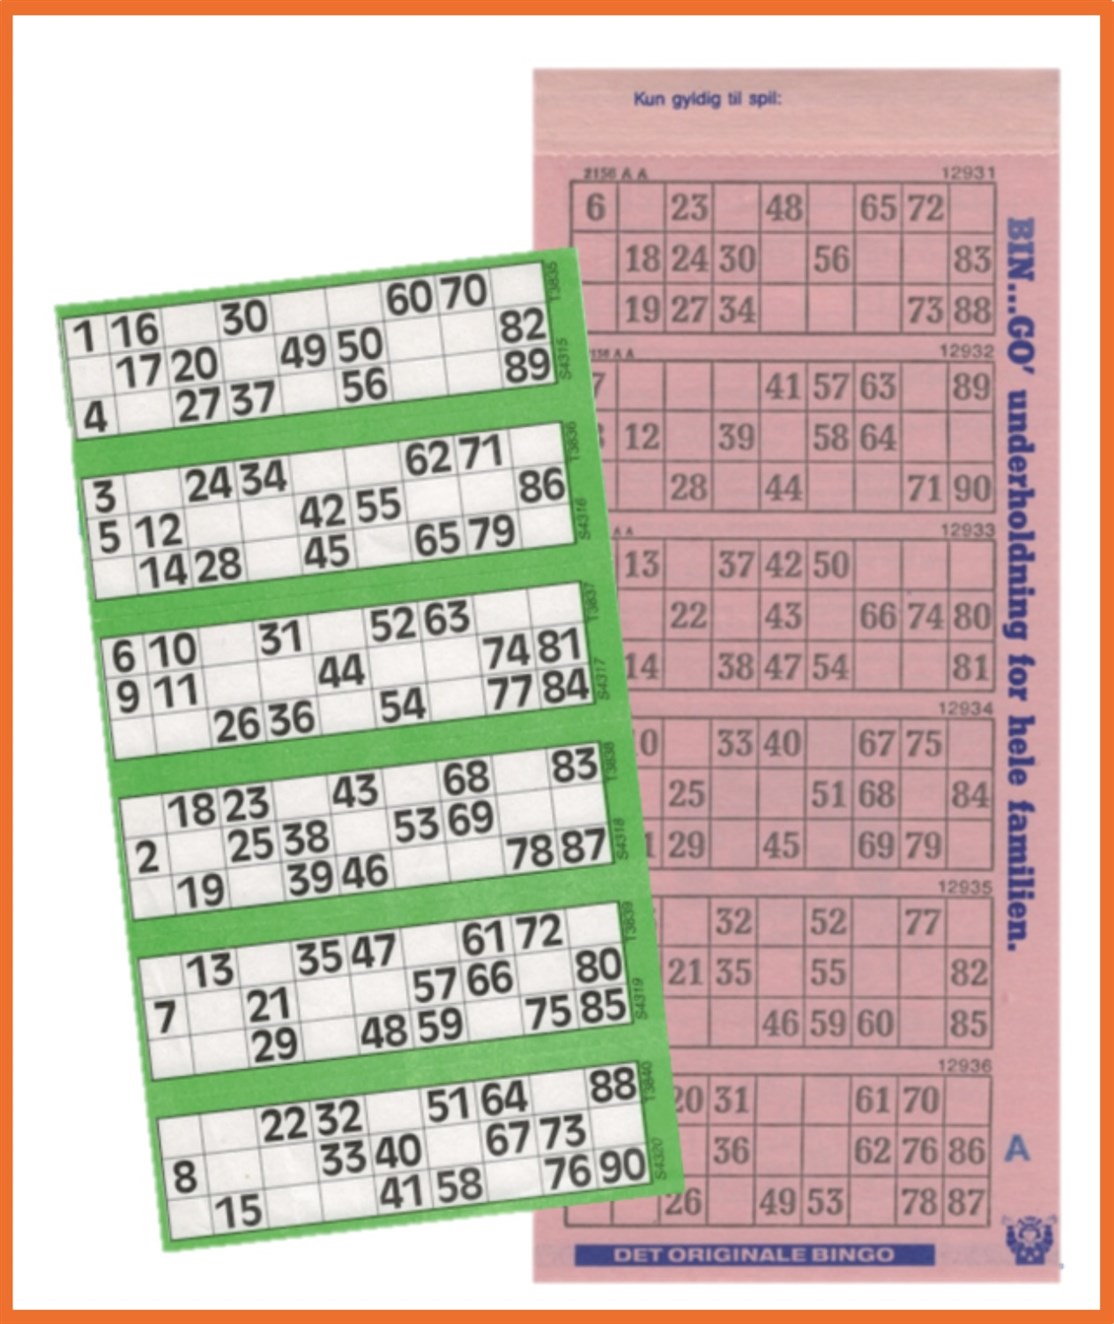 Engangs Spilleplader til Bingo / Banko
Med flere spil som blot krydses af med f.eks. kuglepen eller tus.
*